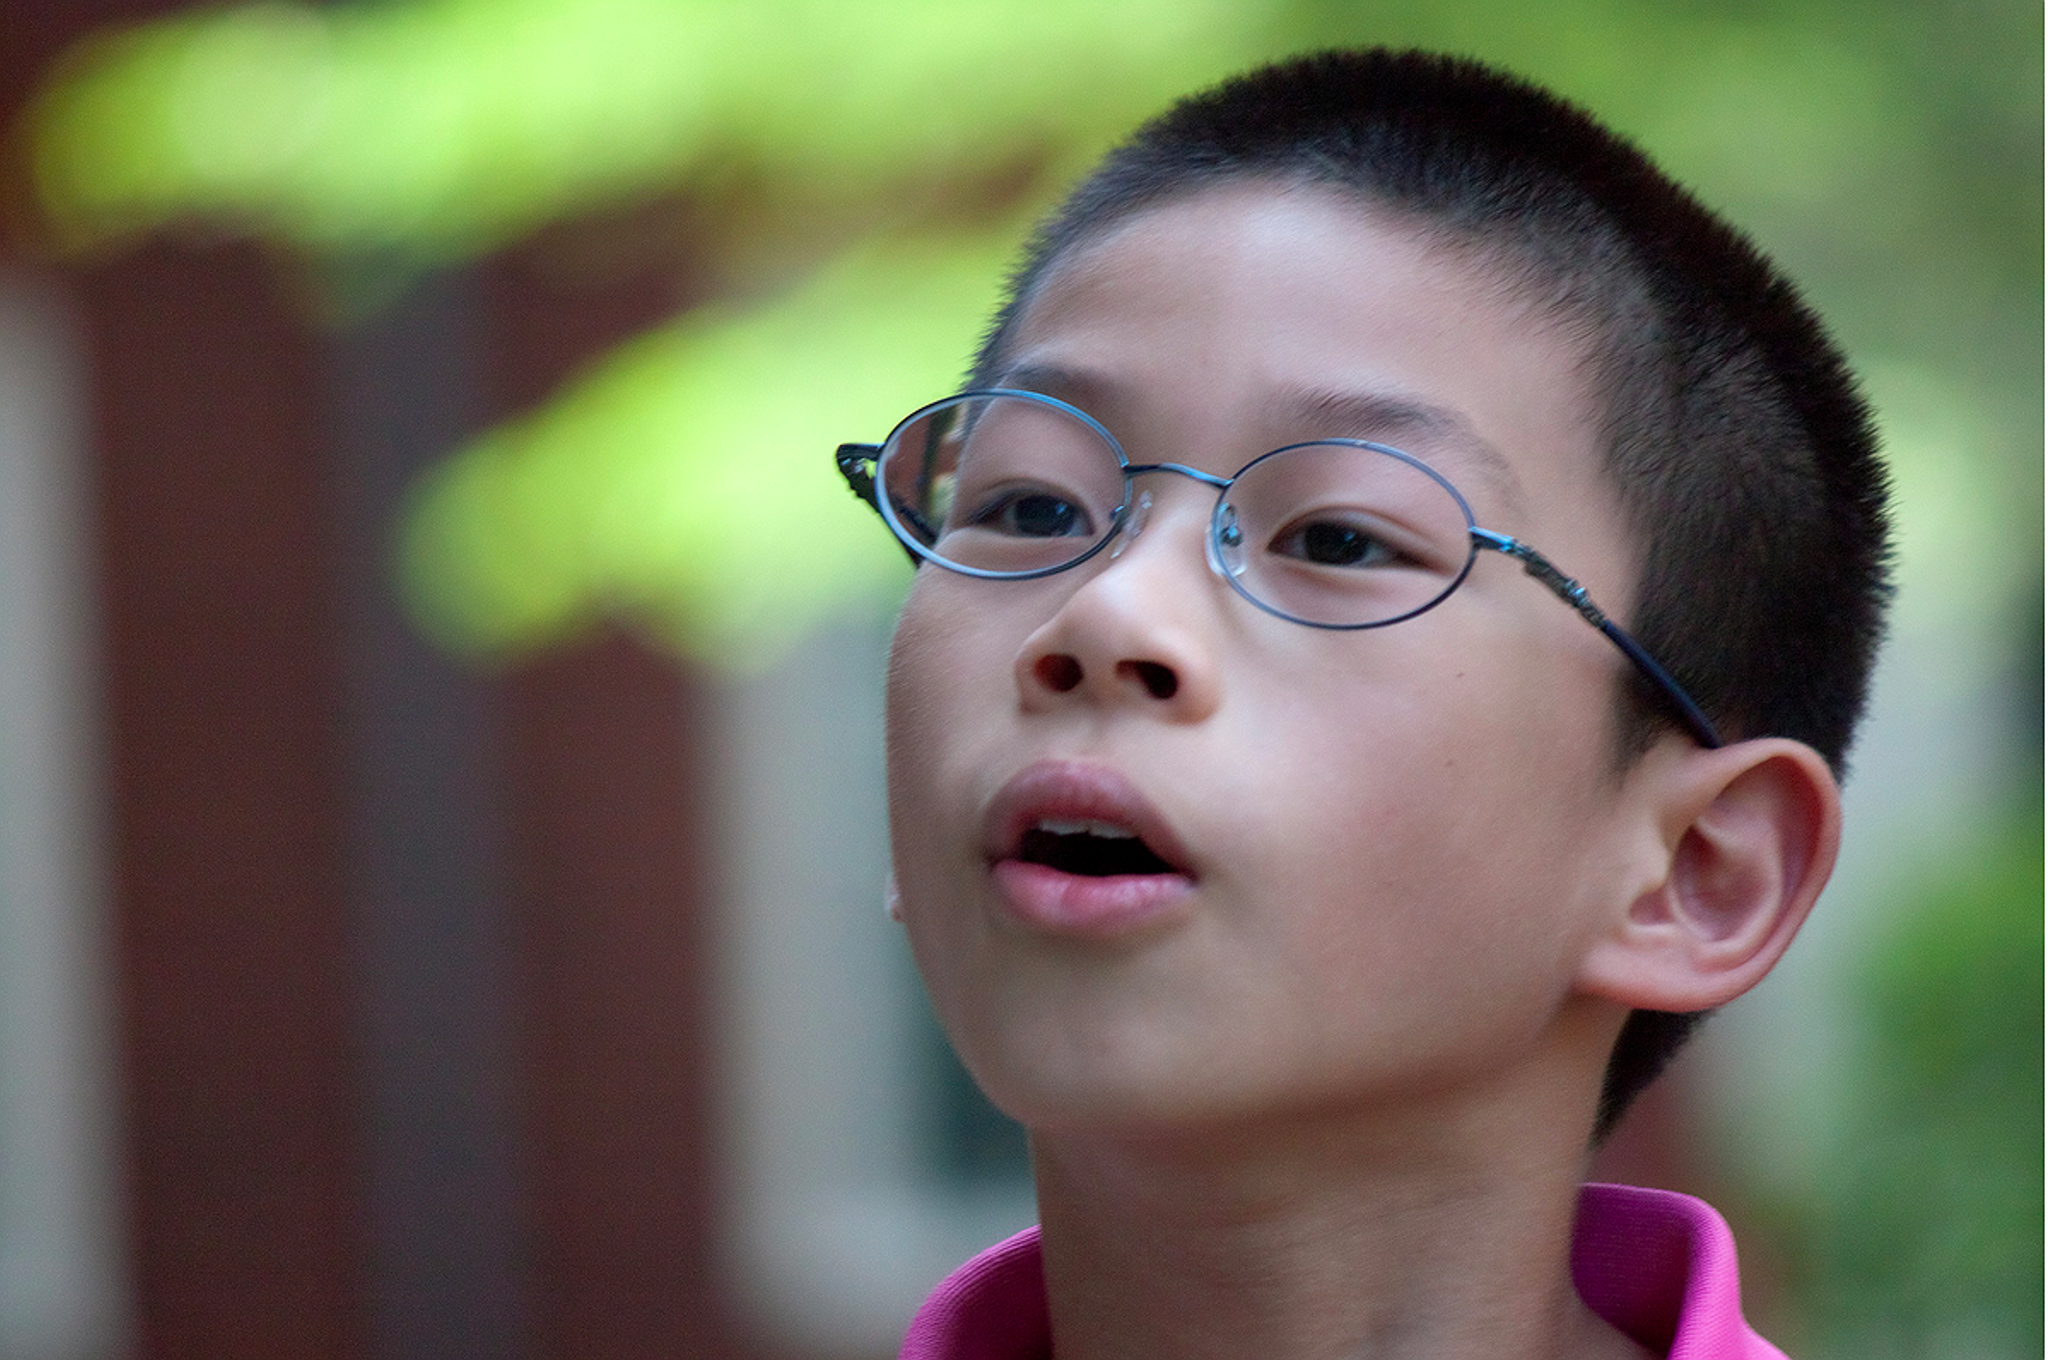 The failing eyesight of Chinese youth